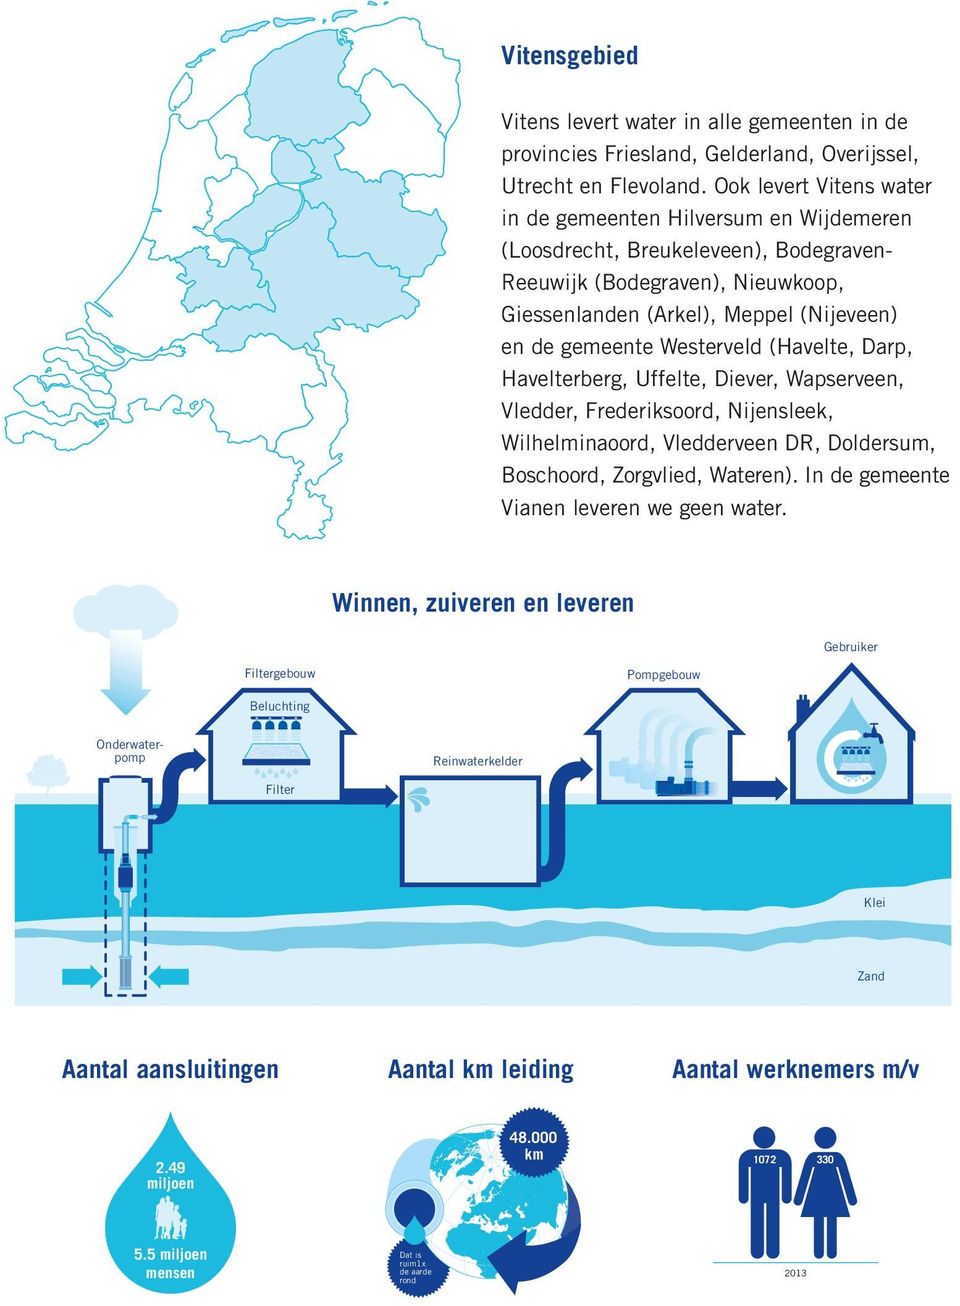 Ook levert Vitens water in de gemeenten Hilversum en Wijdemeren (Loosdrecht, Breukeleveen), Bodegraven- Reeuwijk (Bodegraven), Nieuwkoop, Giessenlanden (Arkel), Meppel (Nijeveen) en de gemeente